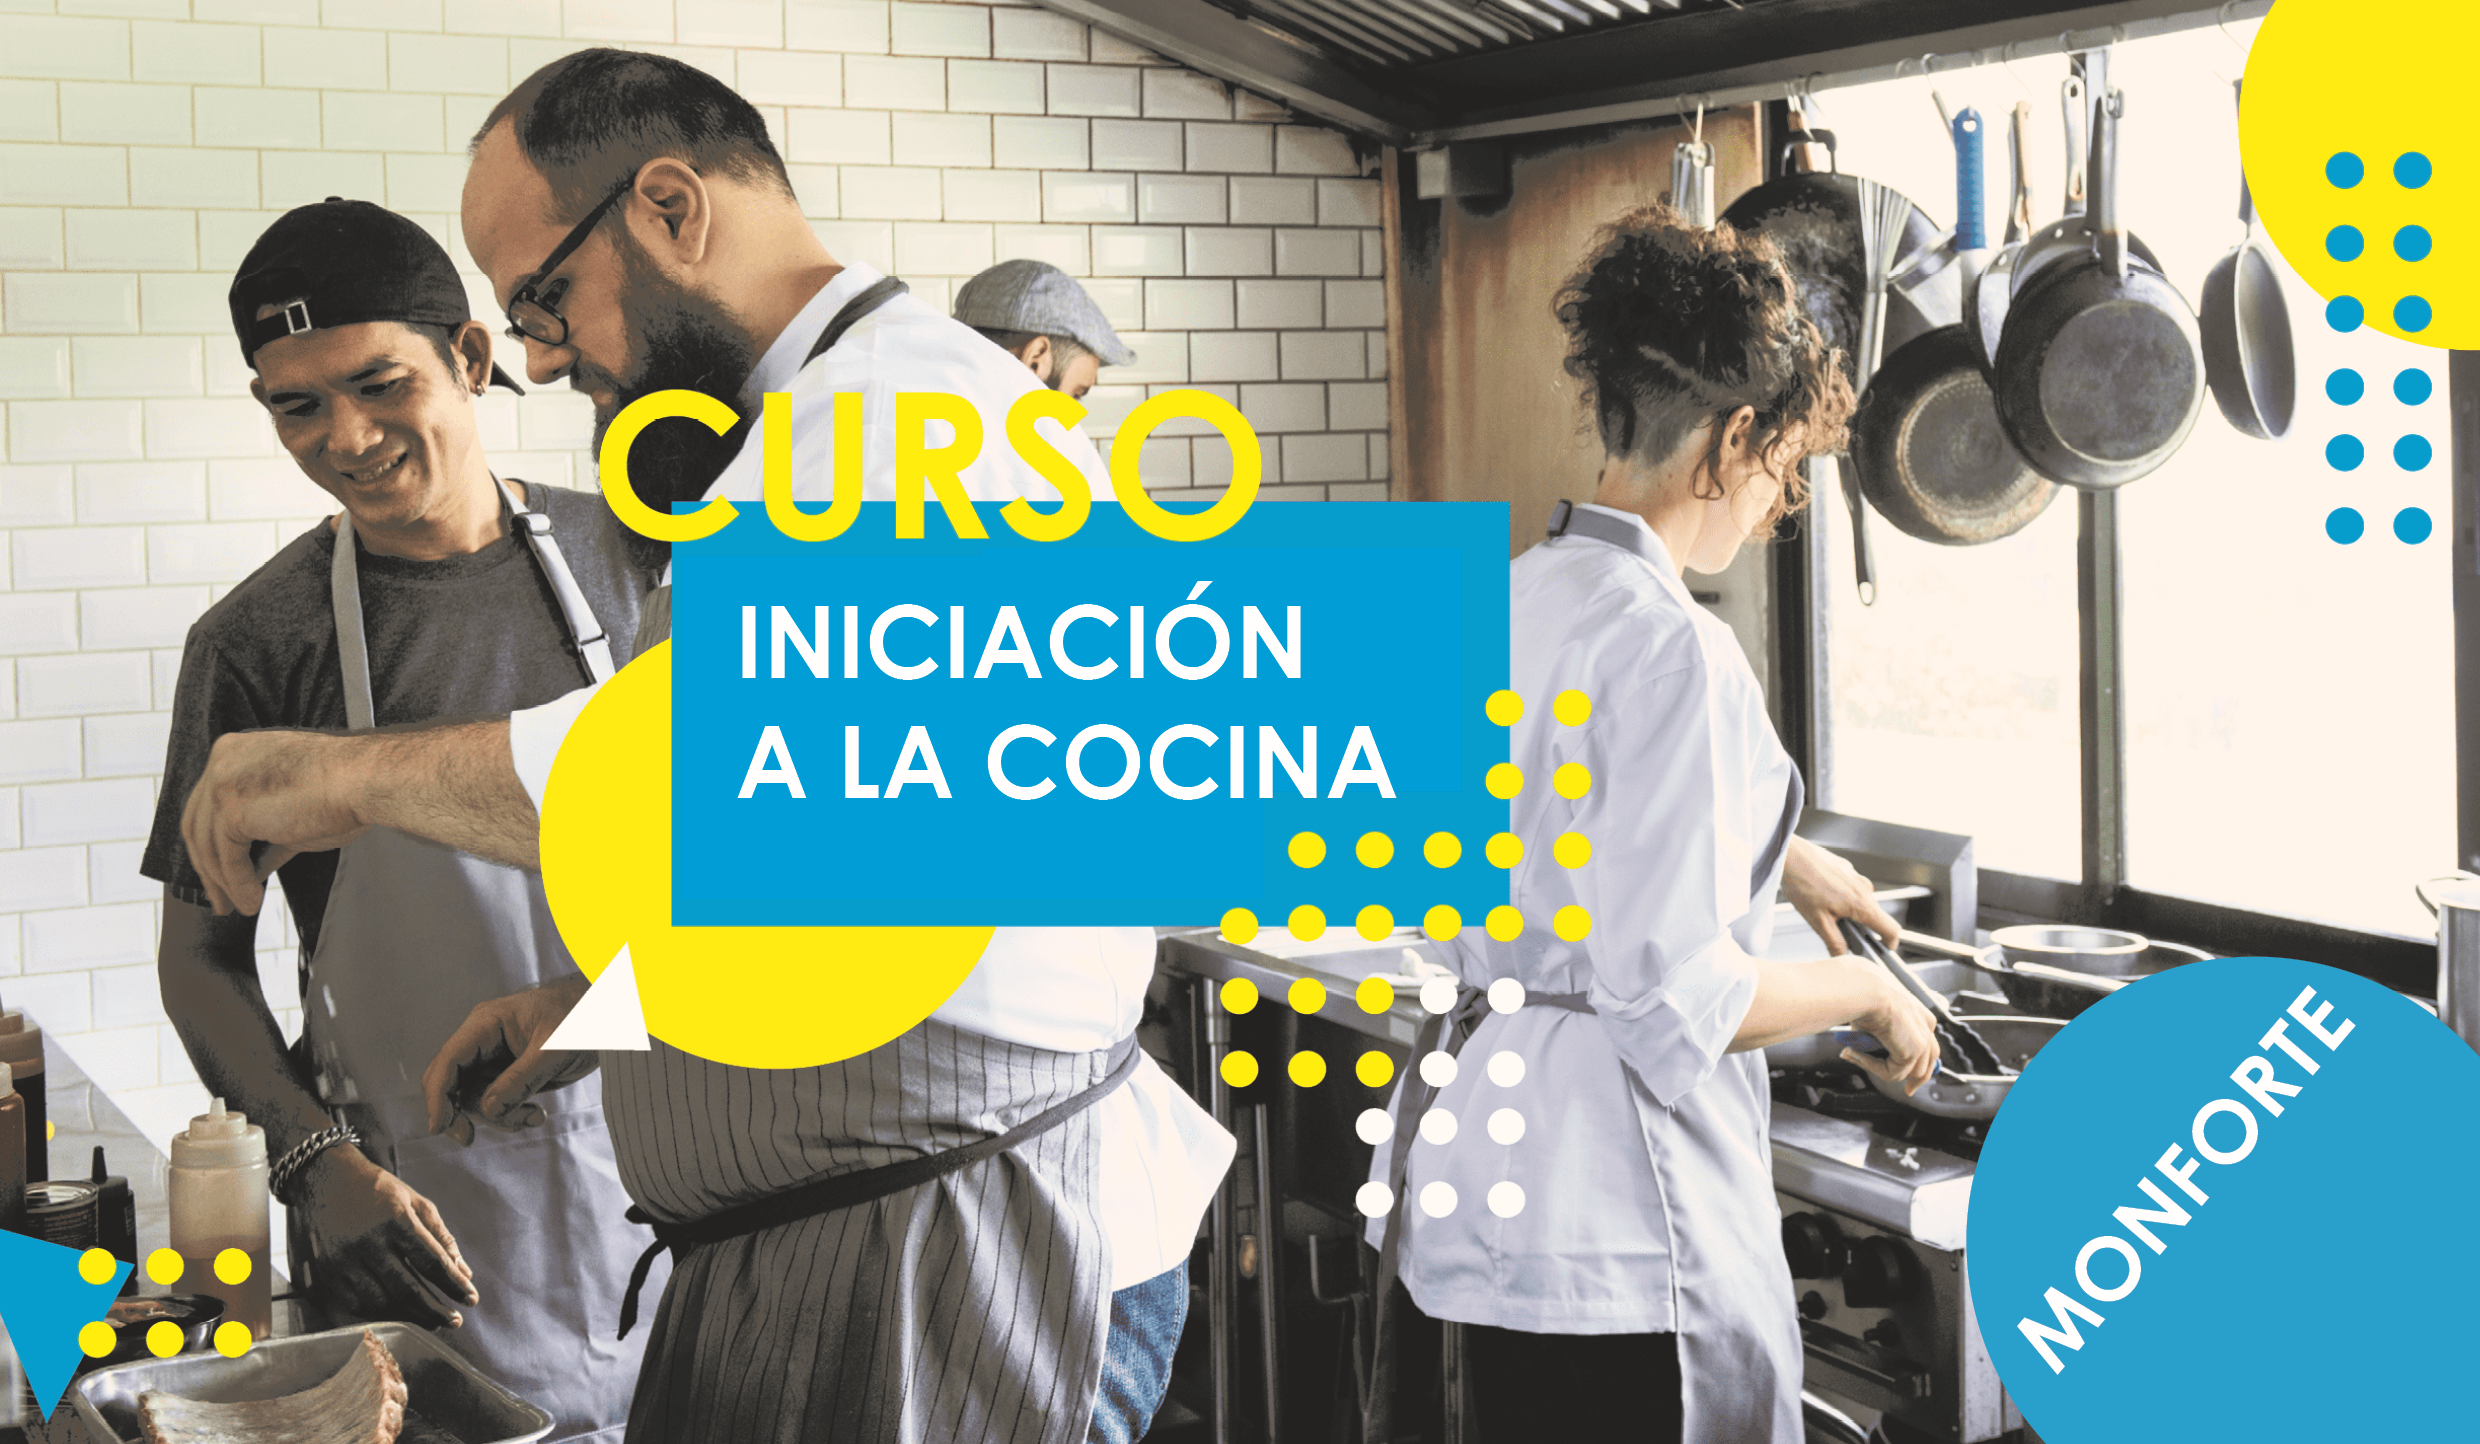 Imagen-inicacion-a-la-cocina-monforte